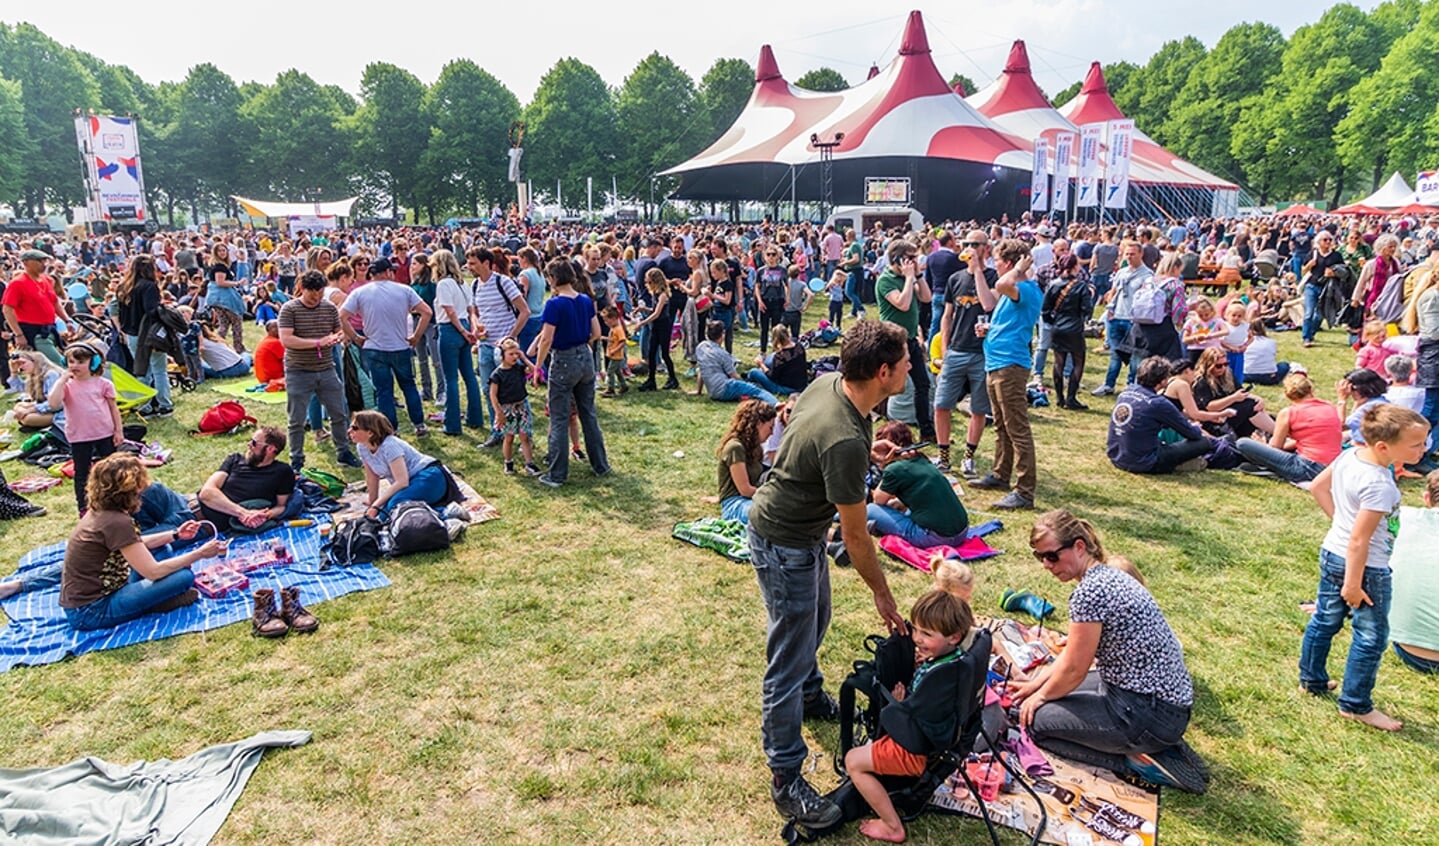 Bevrijdingsfestival Brabant vond dit jaar plaats op de Pettelaarse Schans in Den Bosch.